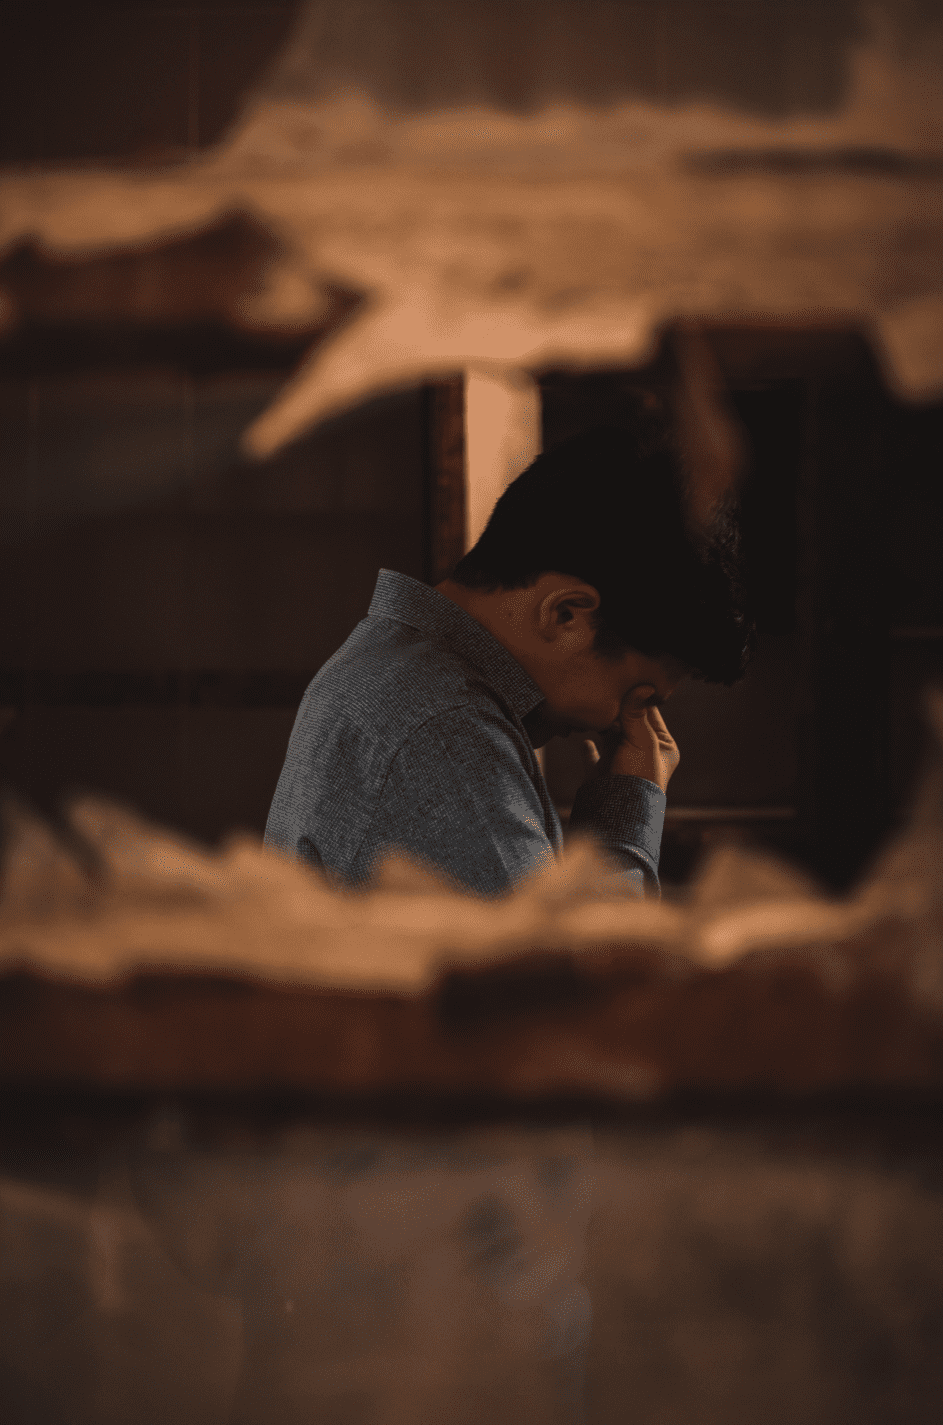 Simon weinte über den Verlust seines Bruders und schwor, sich um dessen Kind Bruno zu kümmern. | Quelle: Pexels